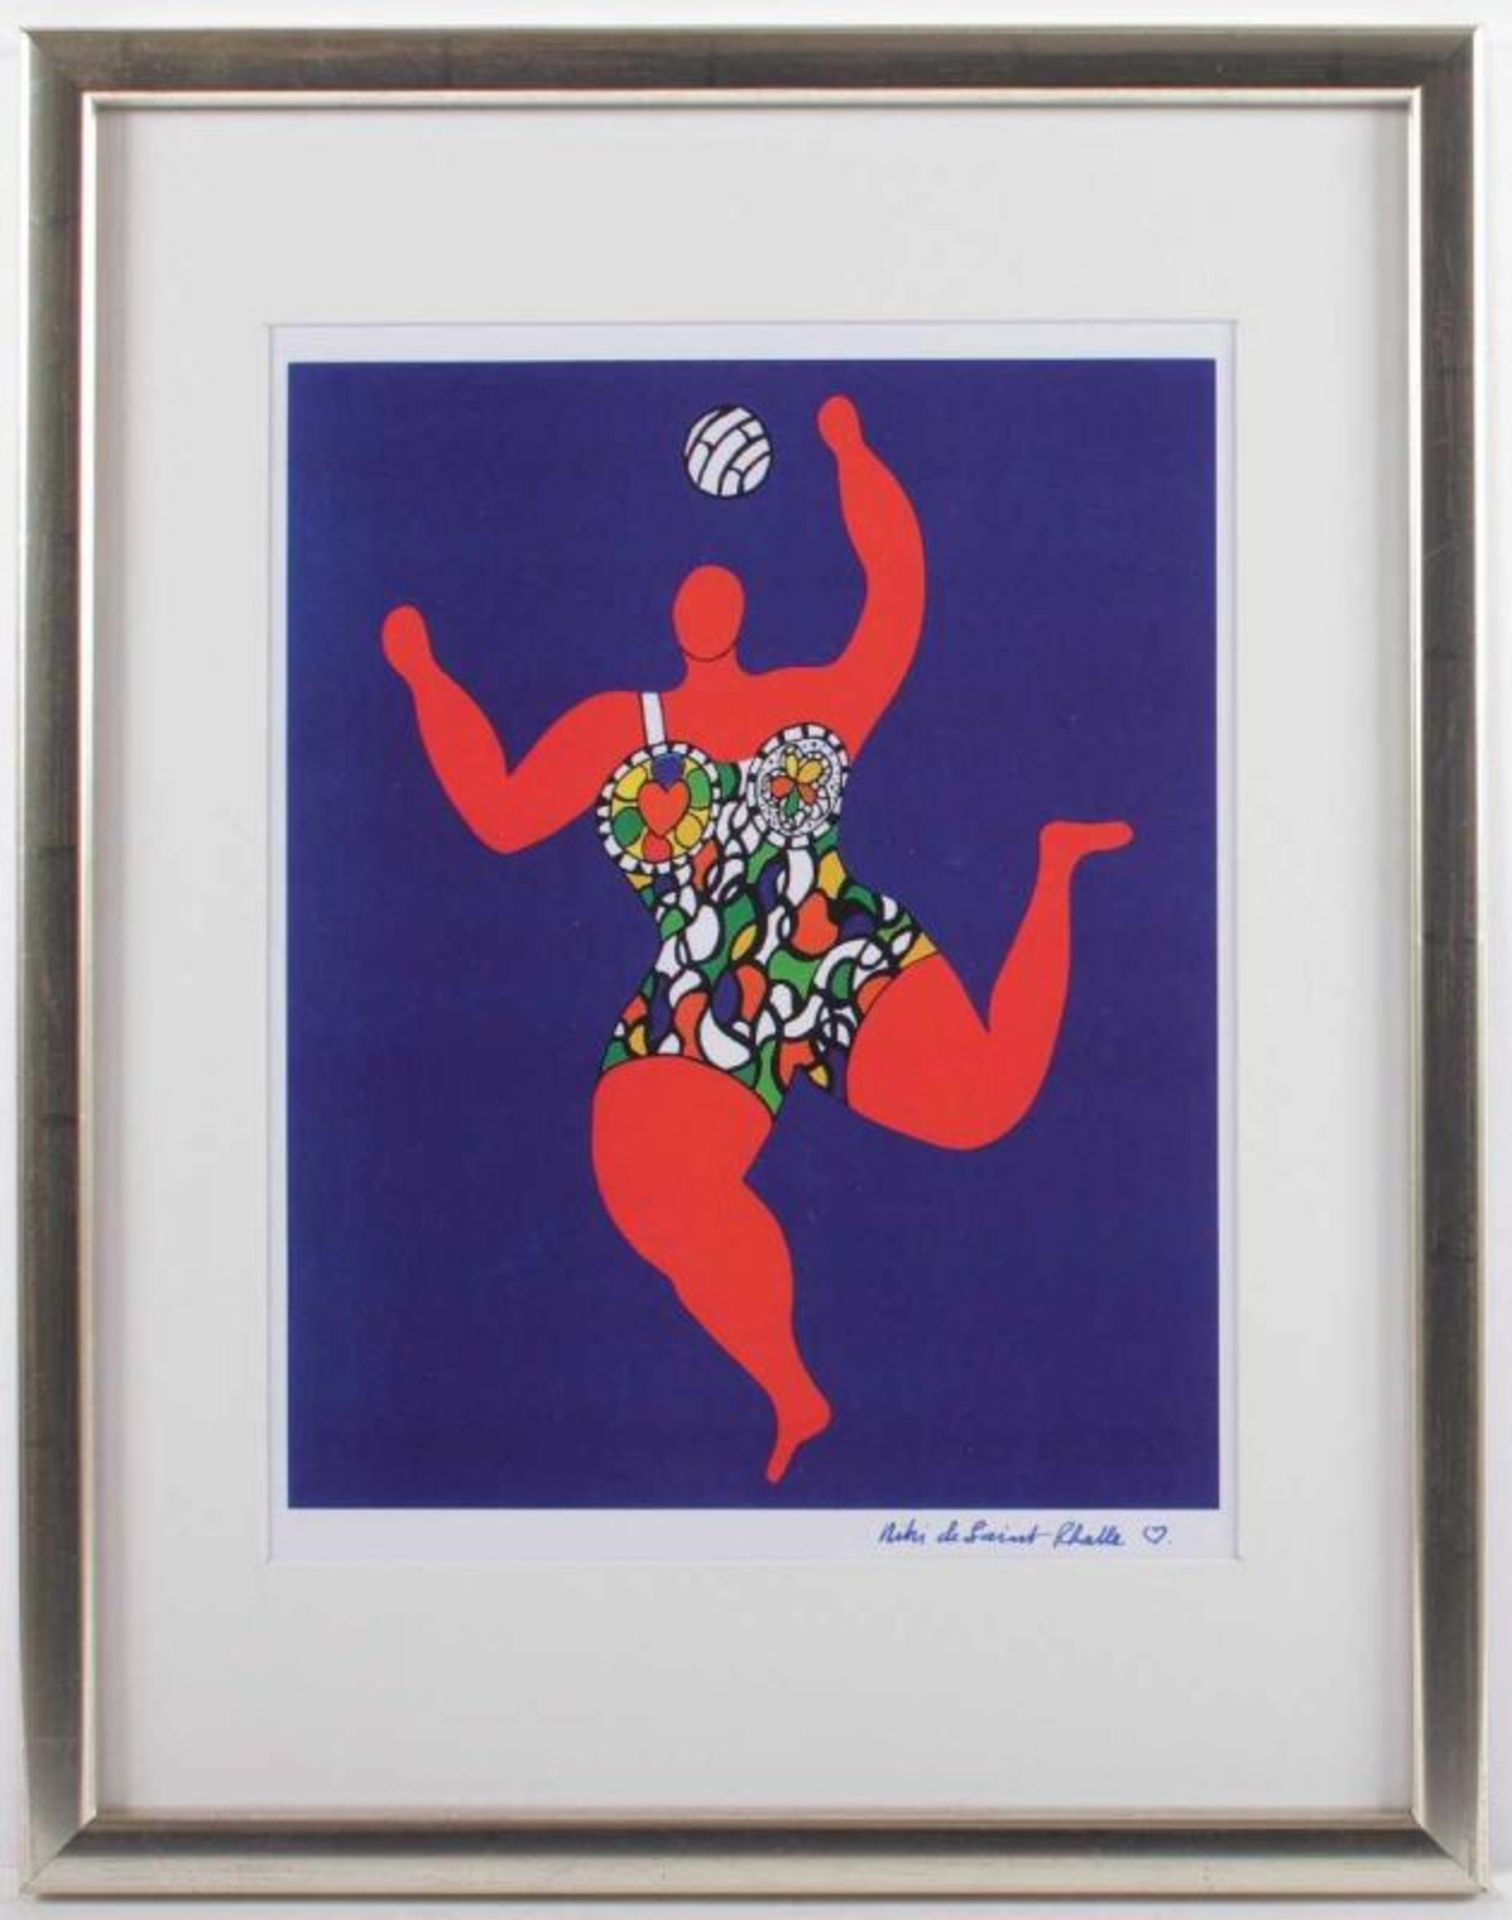 SAINT PHALLE, Niki de, "Ballspielende Nana", Farbmultiple, 29 x 24, 1991, handsigniert, R. 22.00 % - Image 2 of 2